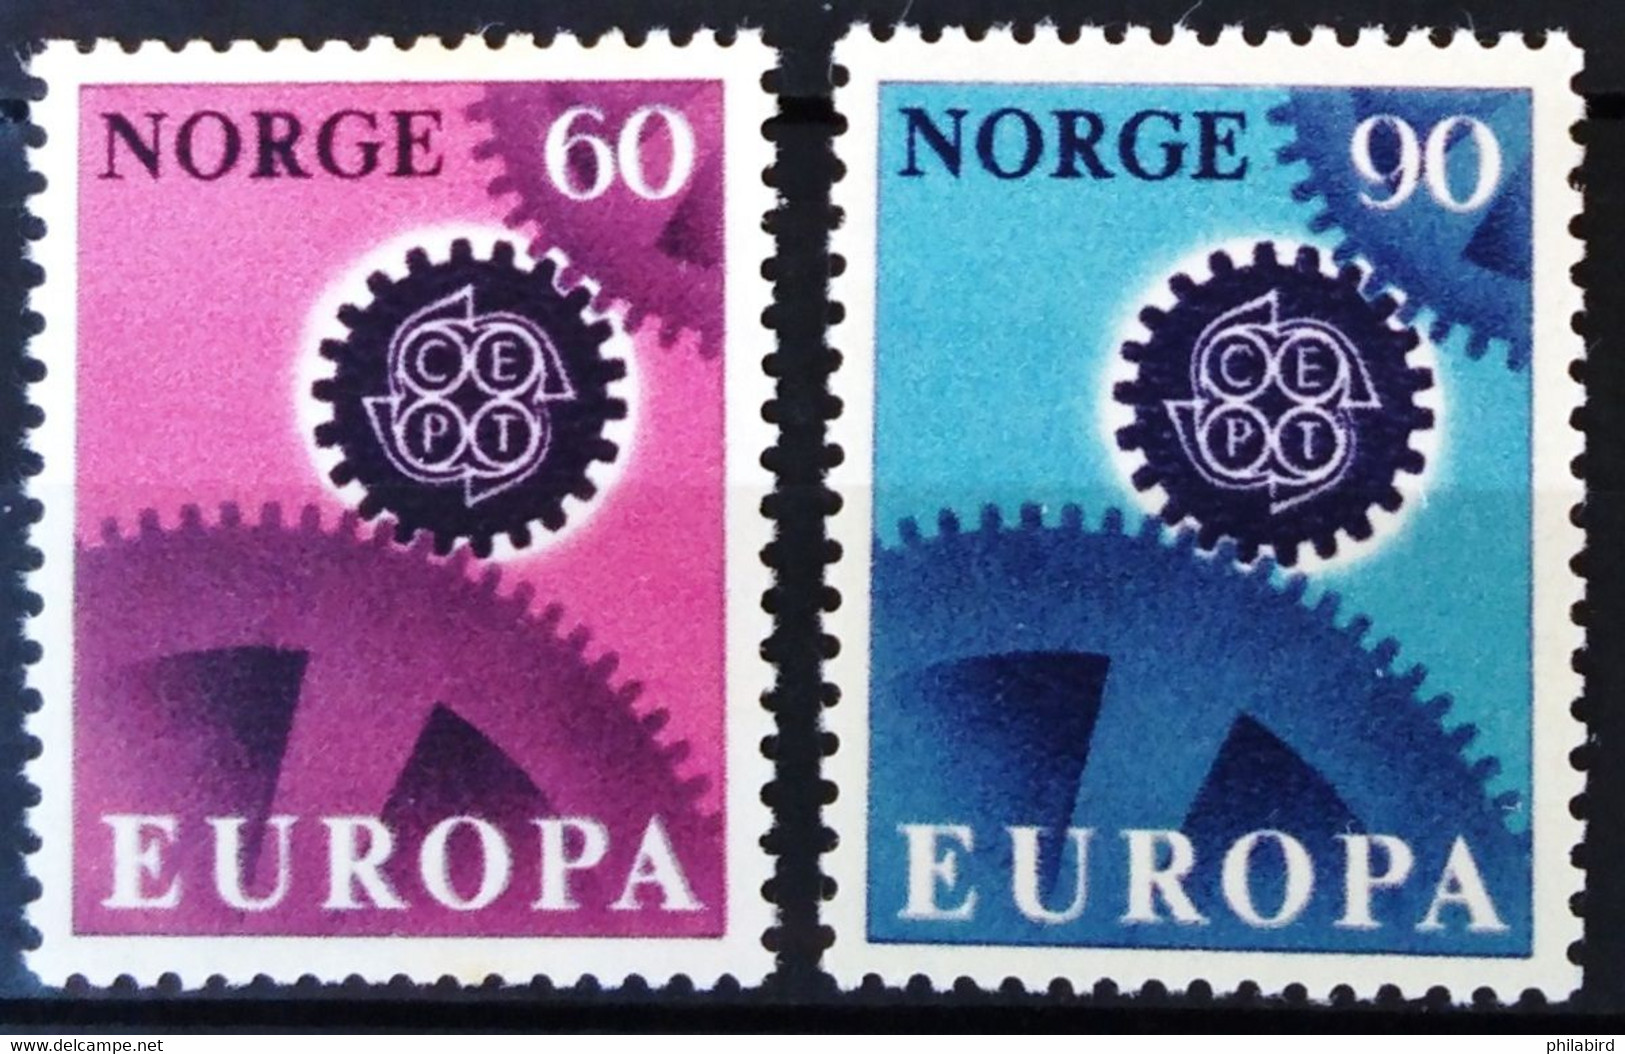 EUROPA 1967 - NORVEGE                    N° 509/510                        NEUF** - 1967